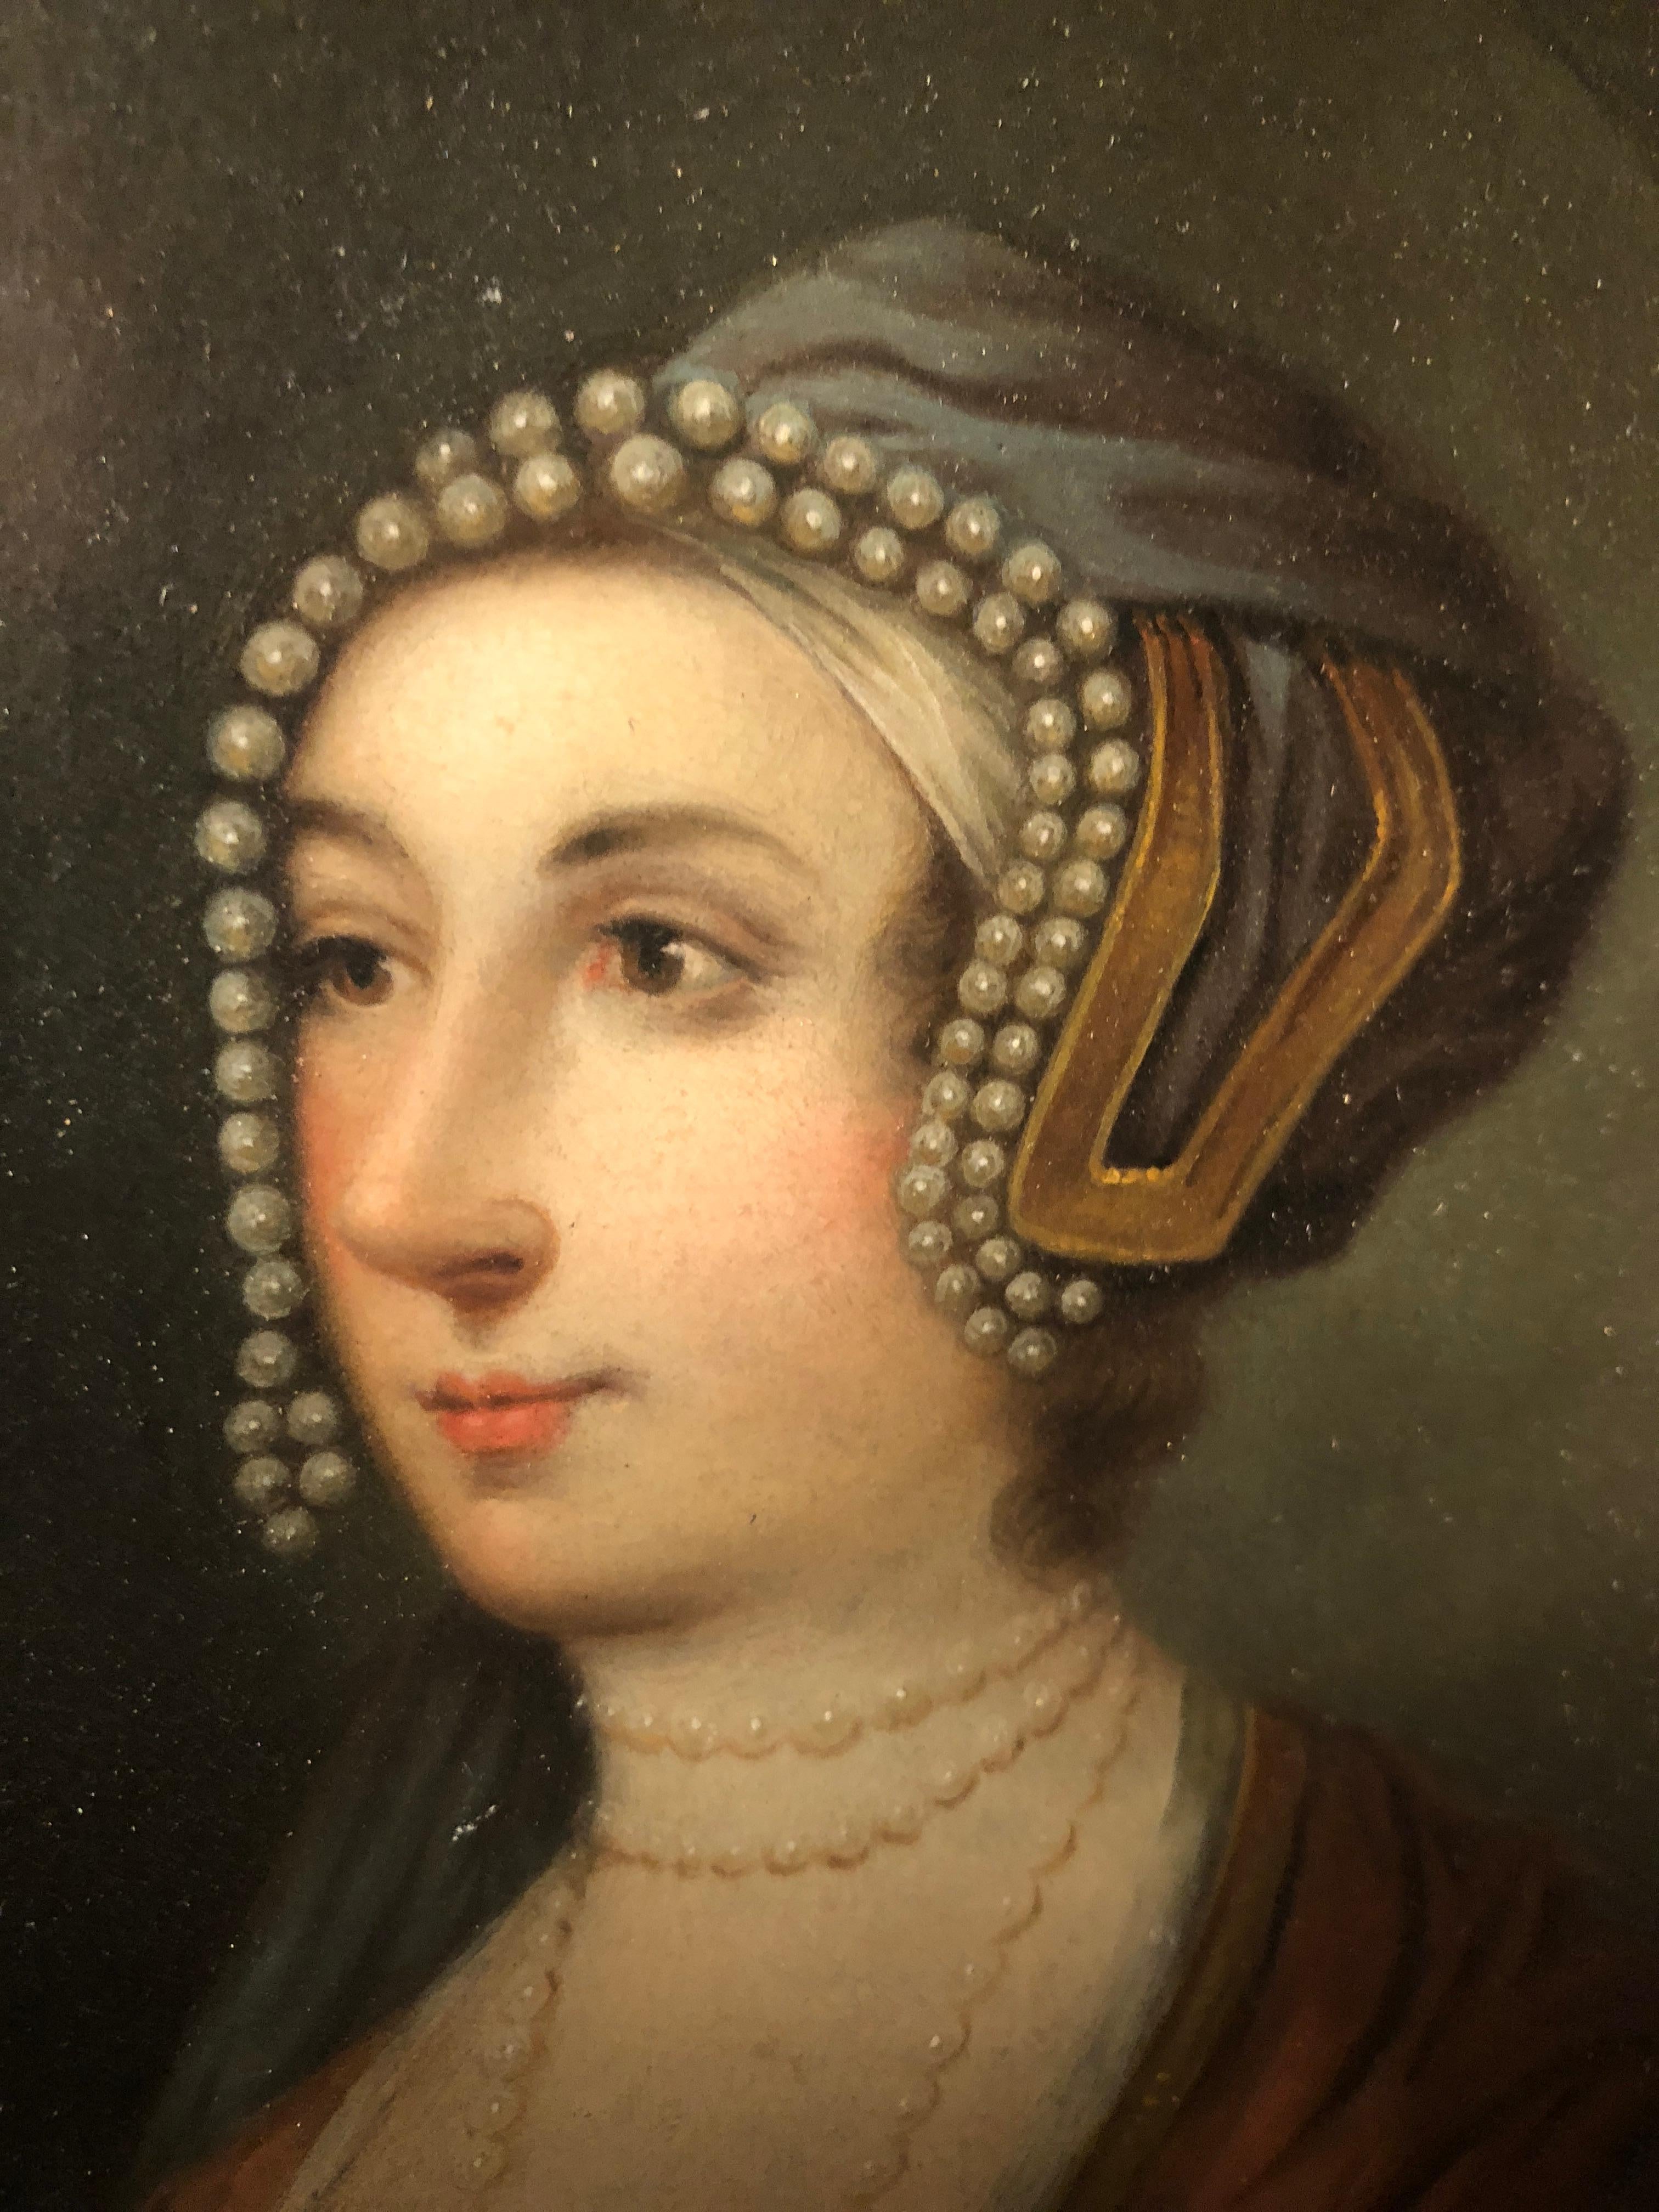 anne boleyn portrait found